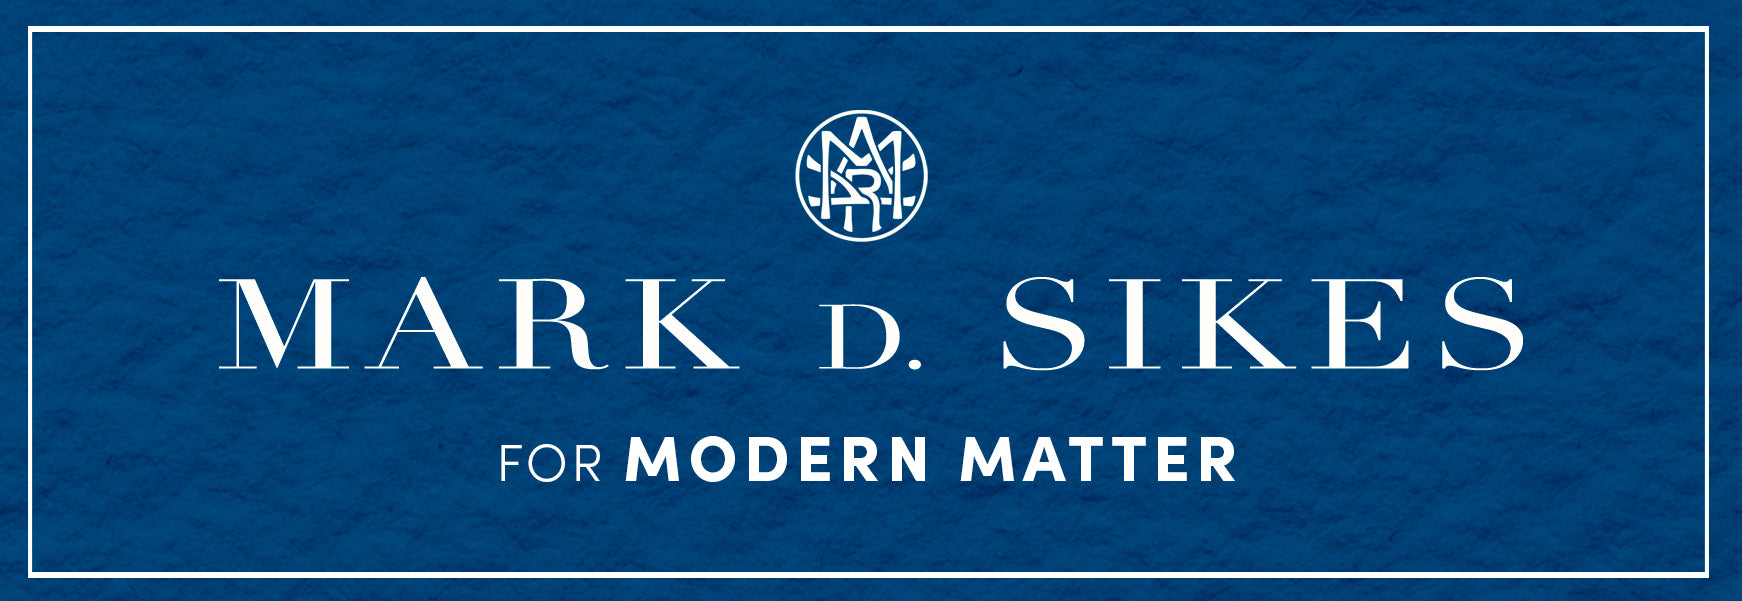 Mark D. Sikes x Modern Matter